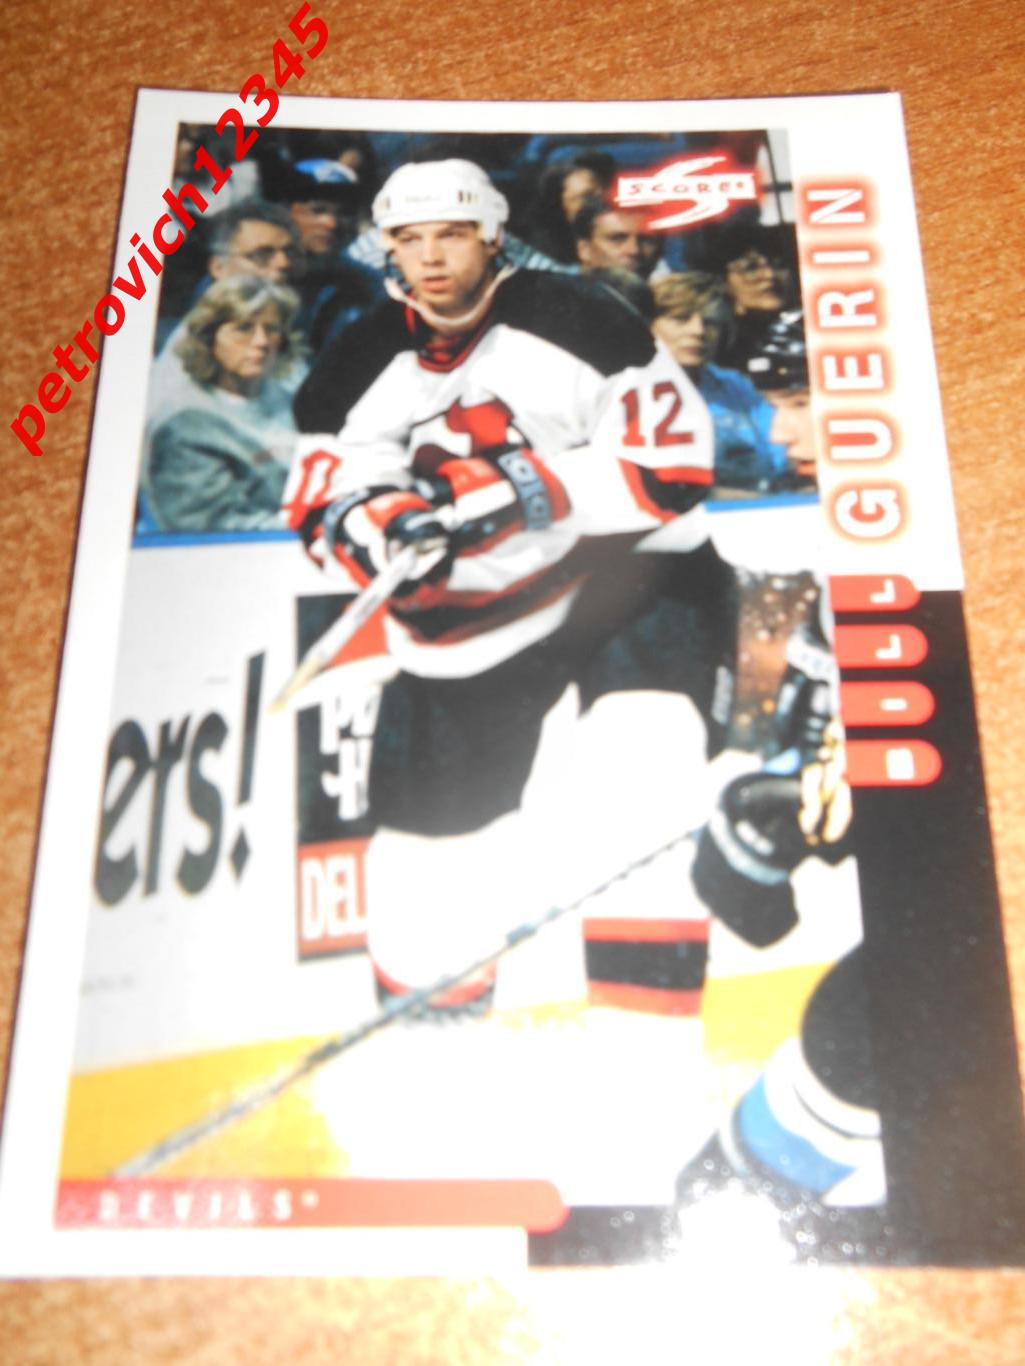 хоккей.карточка - 199 - Bill Guerin - New Jersey Devils